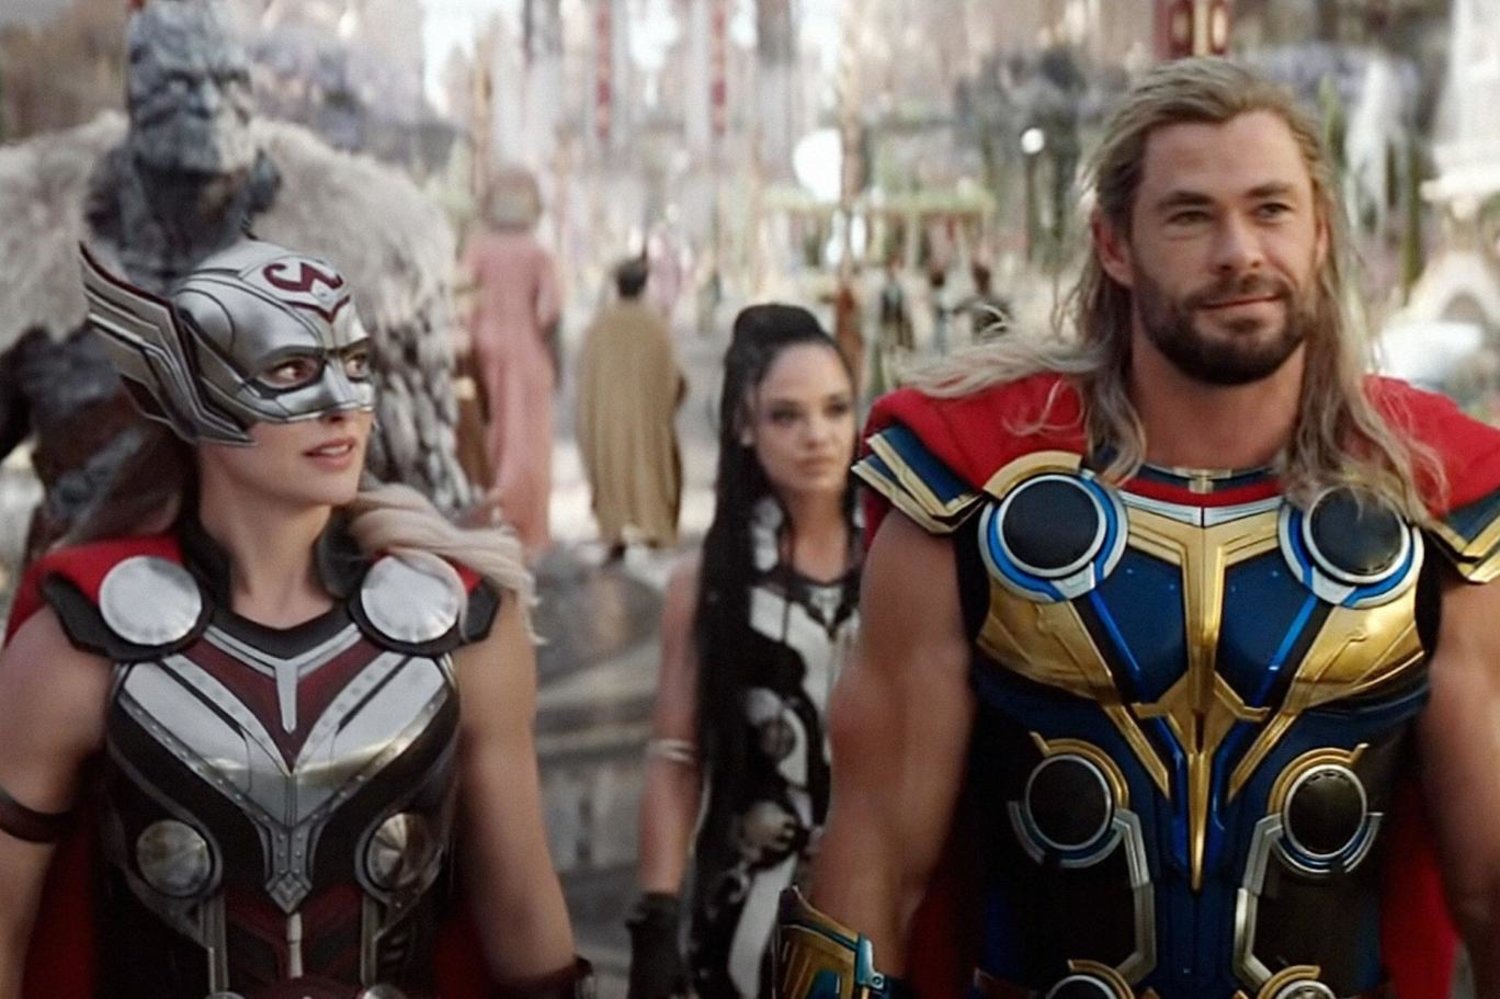 Thor: Aşk ve Gökgürültüsü'nde Chris Hemsworth'la birlikte Natalie Portman, Christian Bale gibi Hollywood yıldızları da yer aldı (Marvel)

